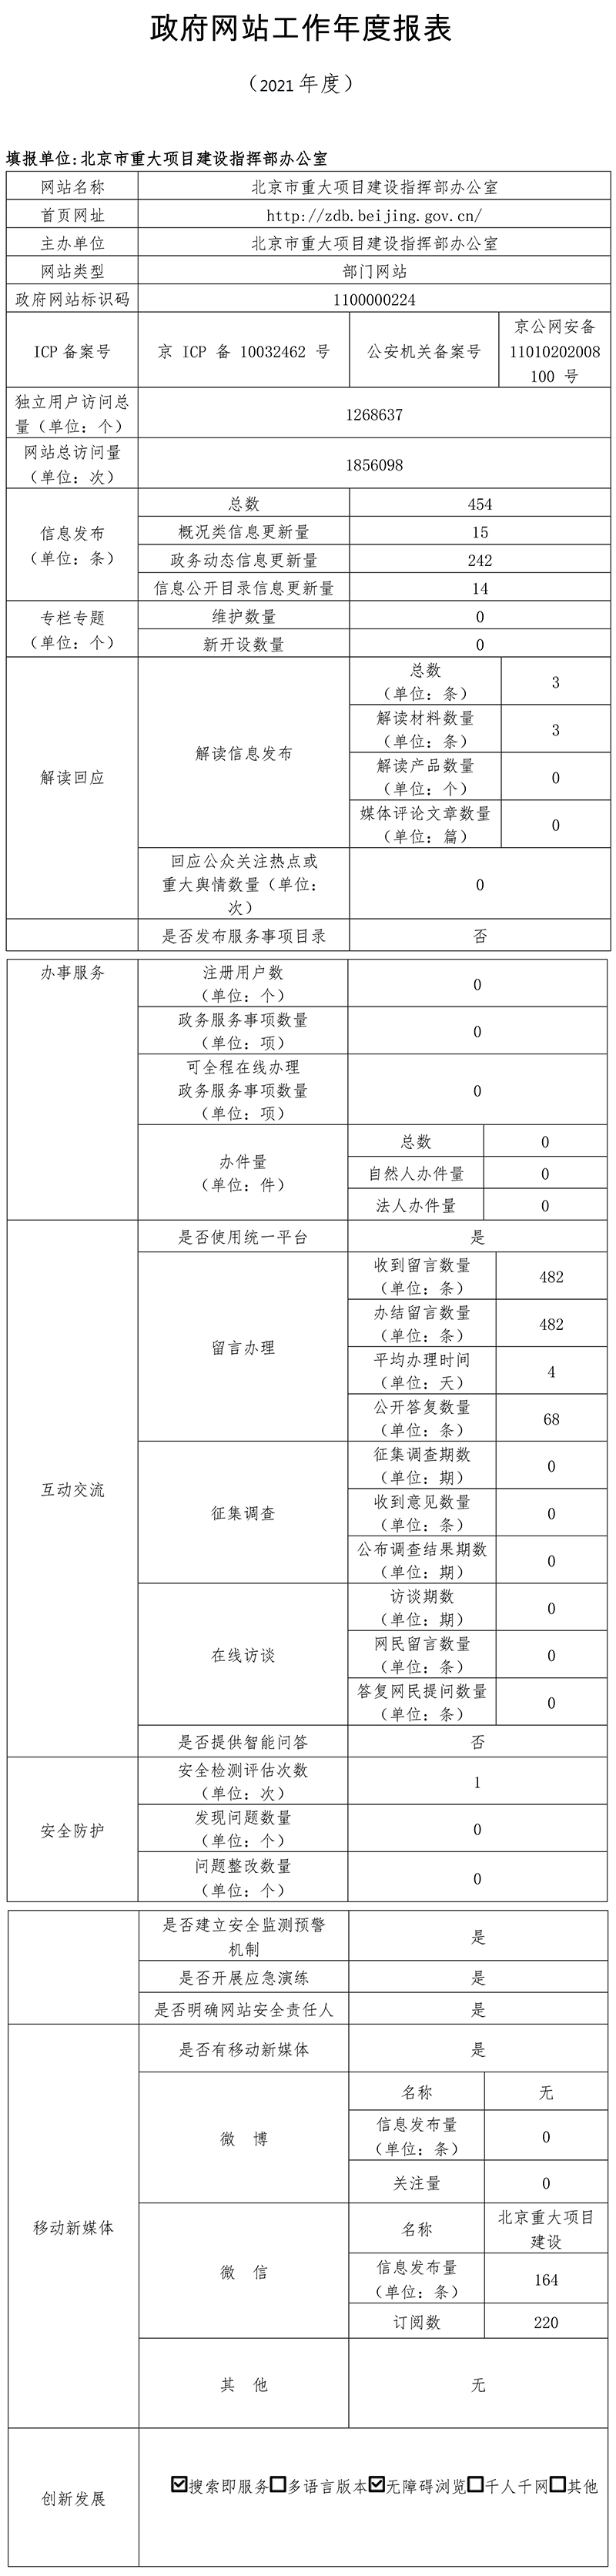 北京市重大項目建設指揮部辦公室2021年政府網站年度工作報表